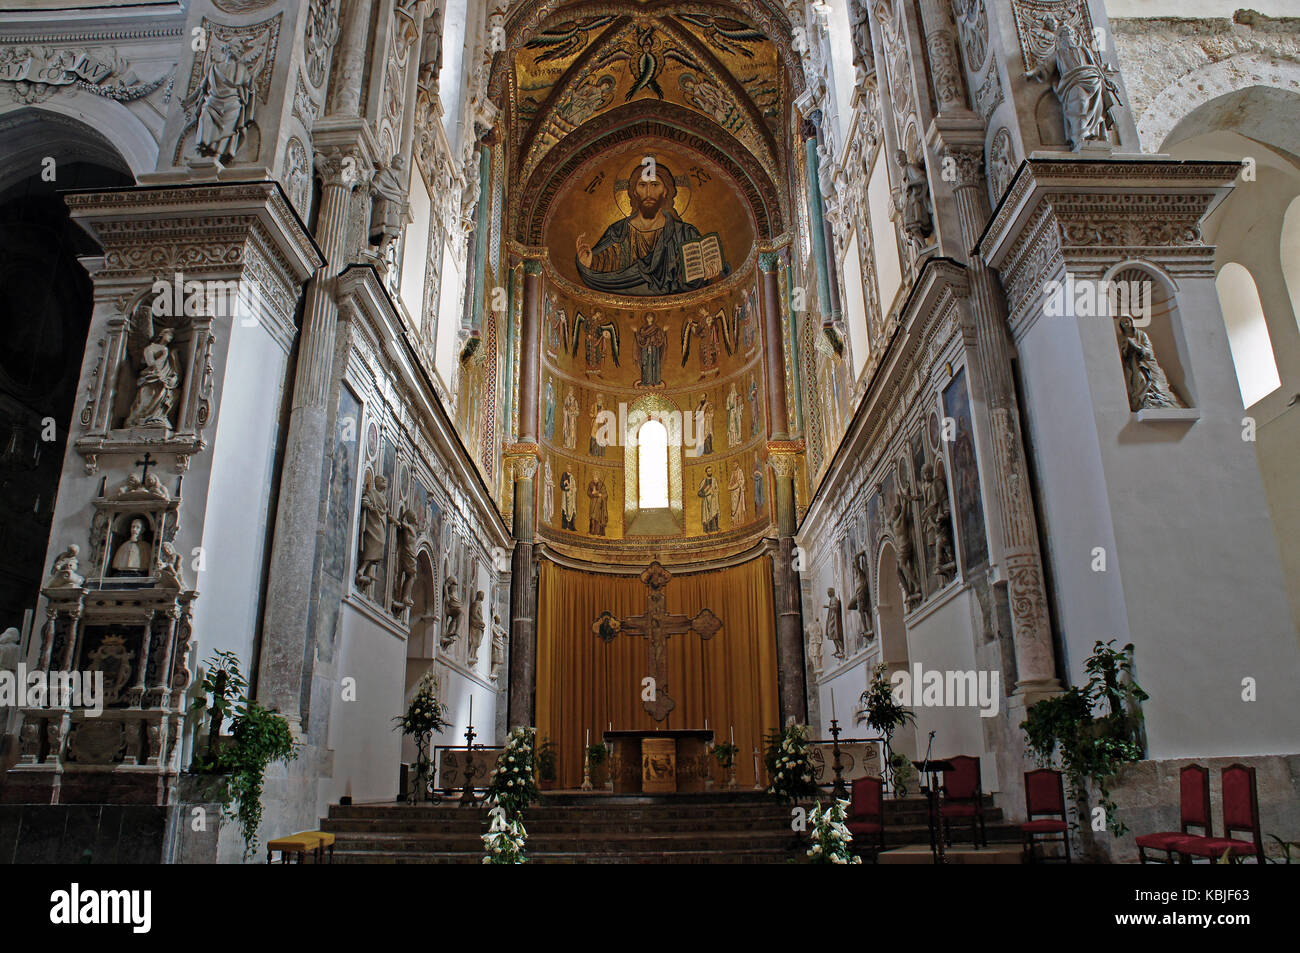 Innenraum der Kathedrale von Cefalù mit Mosaik von Christus Pantokrator in der Apsis, Sizilien, Italien Stockfoto